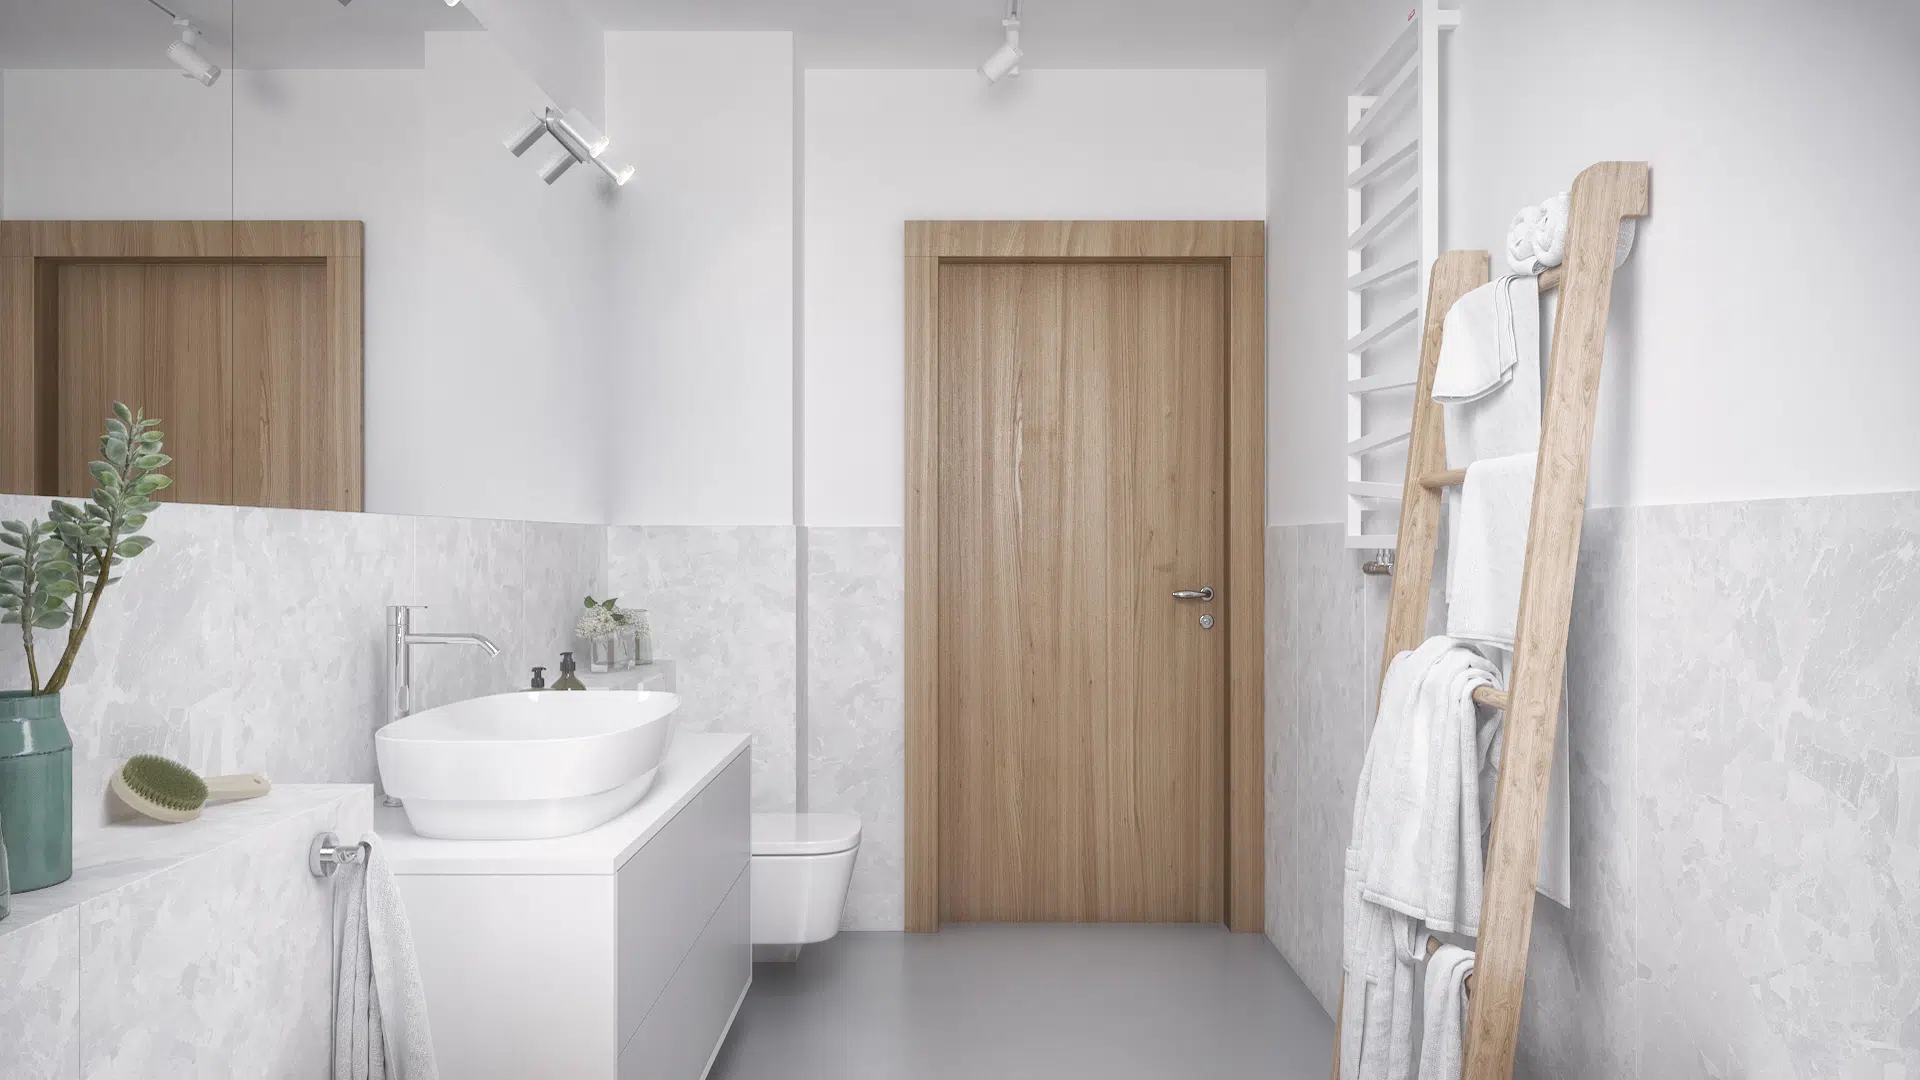 Łazienka w odcieniach bieli i szarości z drewnianymi elementami dekoracyjnymi i drzwiami w tym samym kolorze